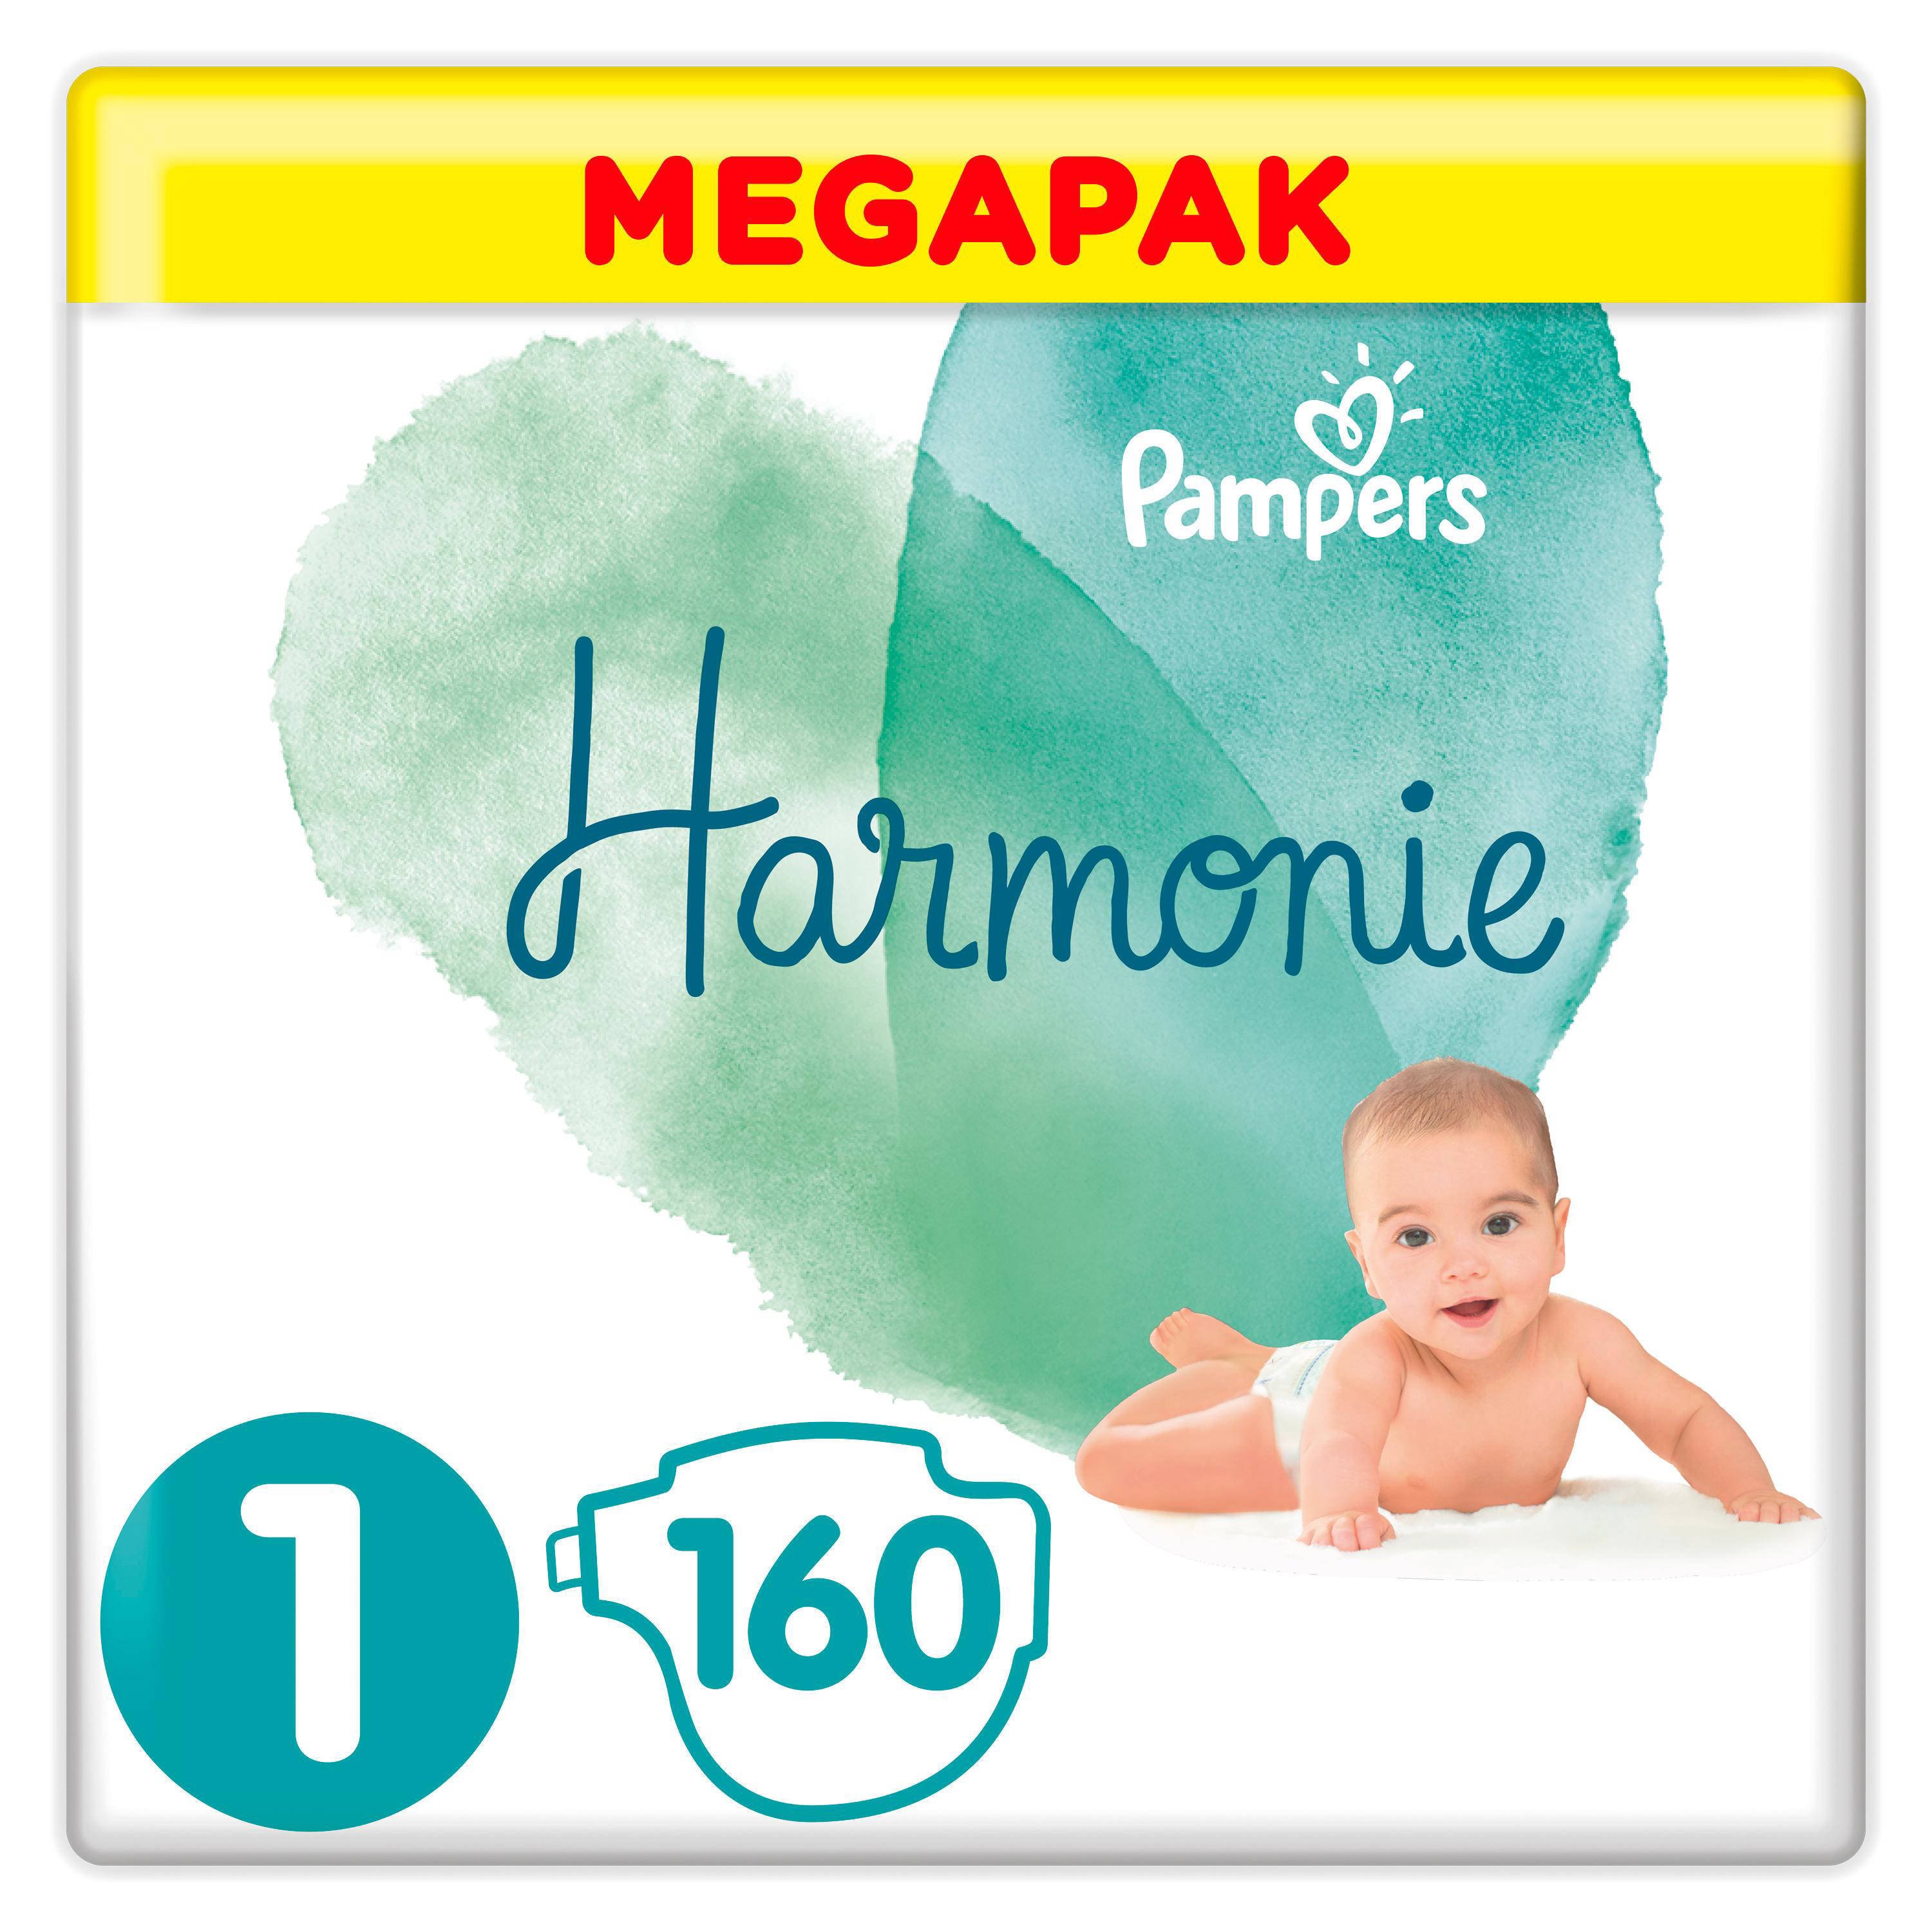 Pampers Harmonie Megapack Maat 1 (2-5kg) 160 luiers online kopen